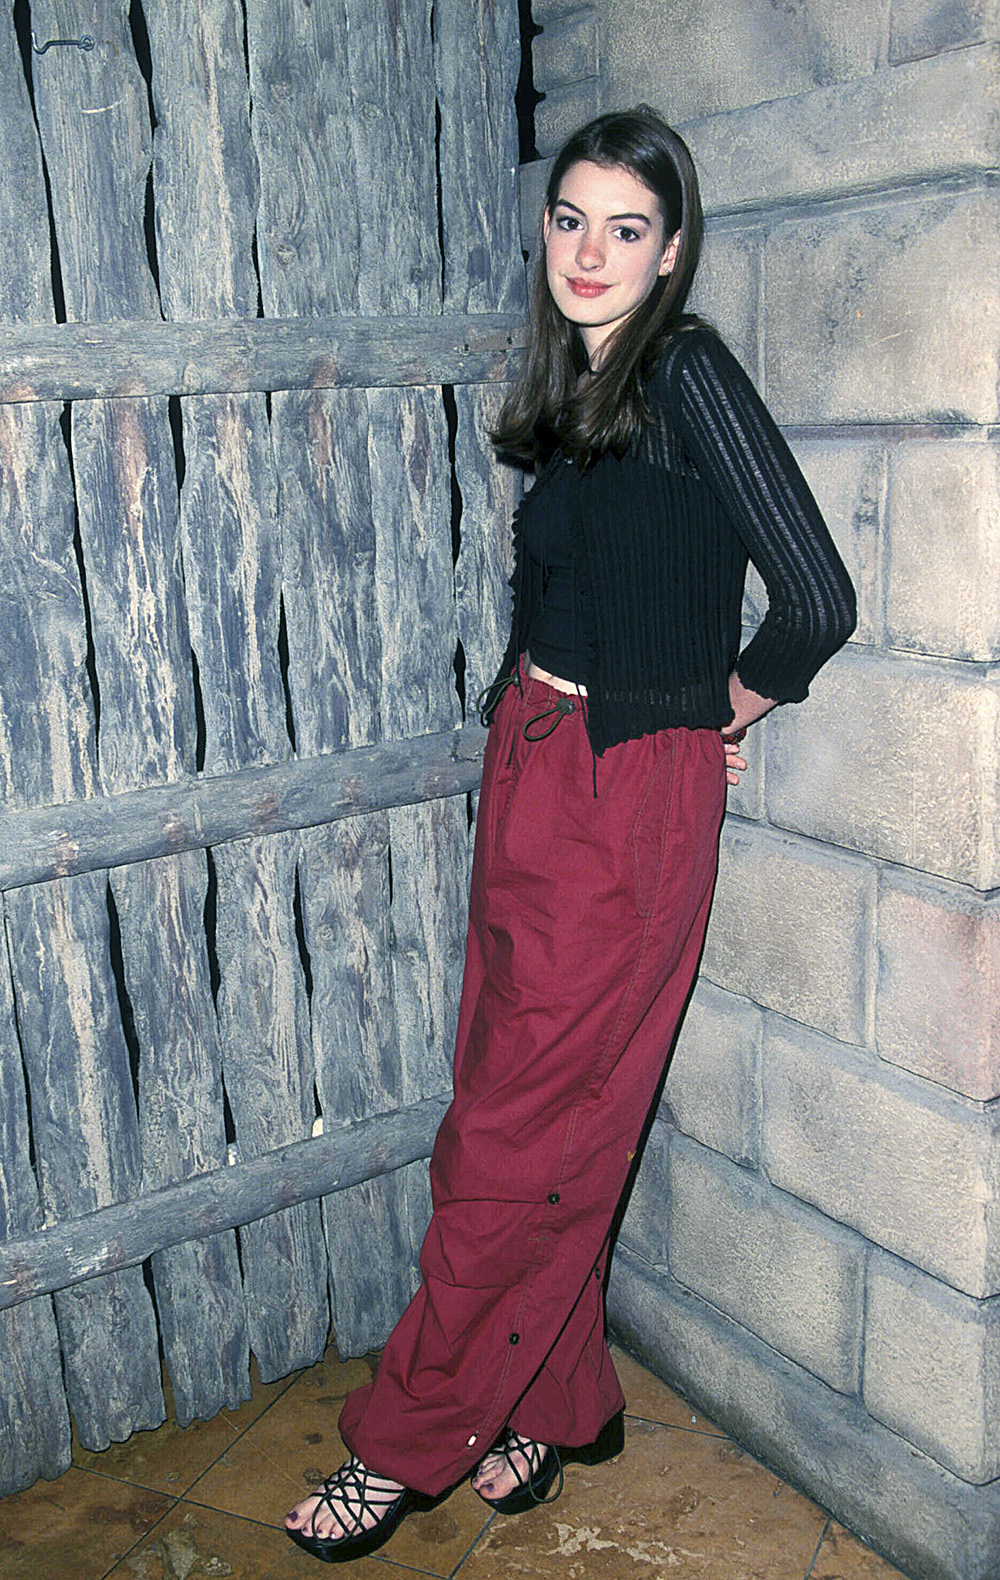 Anne Hathaway en el Fox Teen Press Junket Planet Hollywood en Los Ángeles, CA 23-07-1999. Crédito del globo: 3553583Photos/MediaPunch /IPX